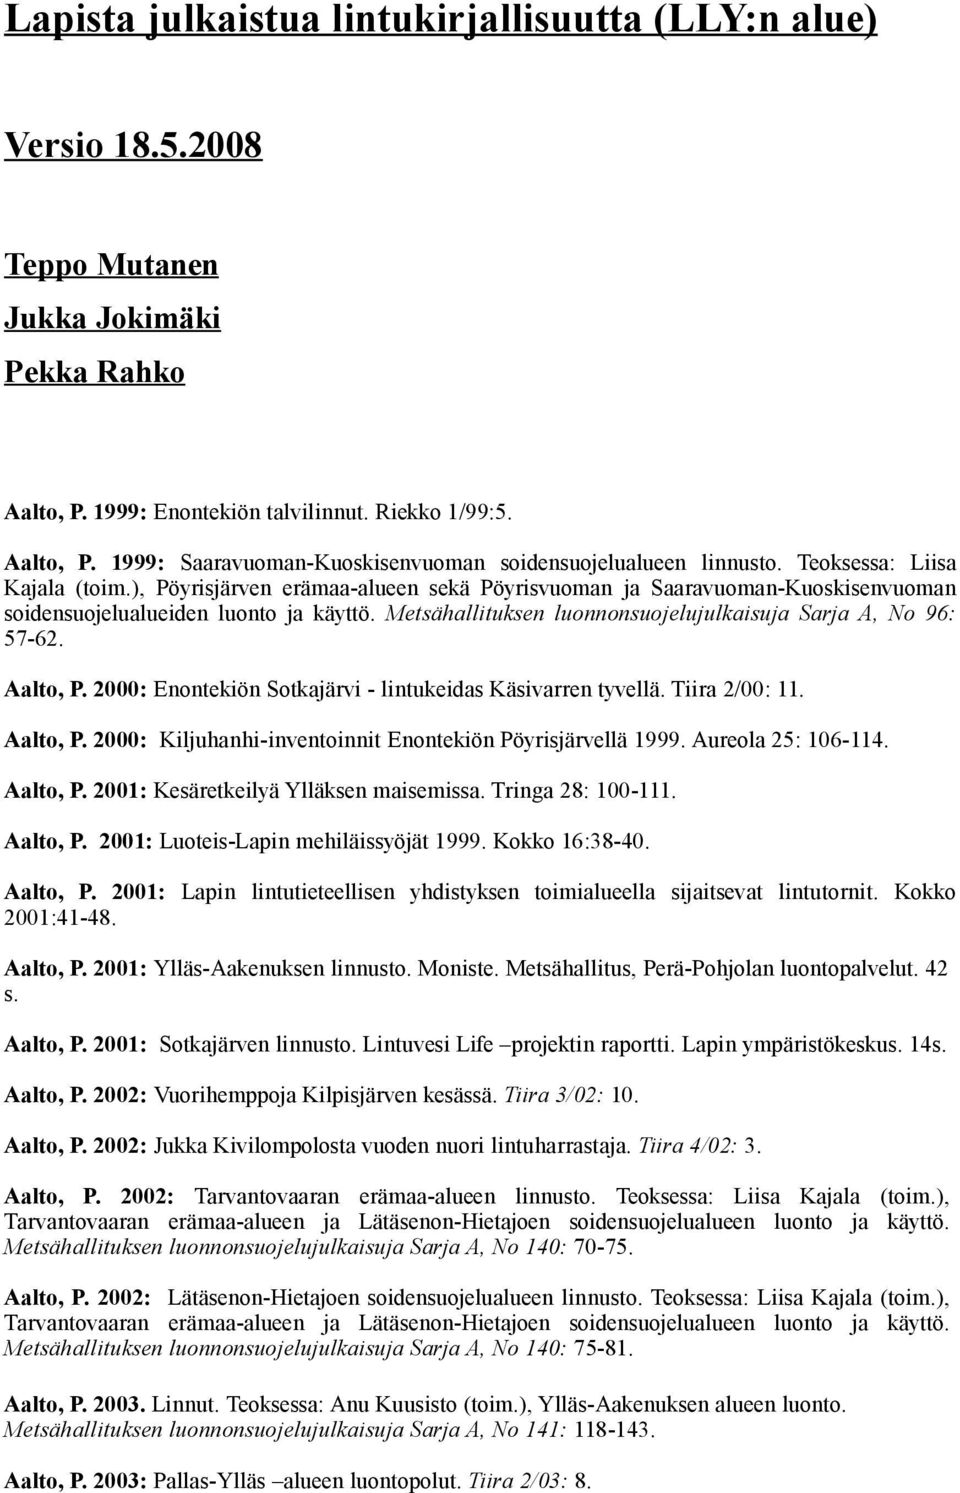 Metsähallituksen luonnonsuojelujulkaisuja Sarja A, No 96: 57-62. Aalto, P. 2000: Enontekiön Sotkajärvi - lintukeidas Käsivarren tyvellä. Tiira 2/00: 11. Aalto, P. 2000: Kiljuhanhi-inventoinnit Enontekiön Pöyrisjärvellä 1999.